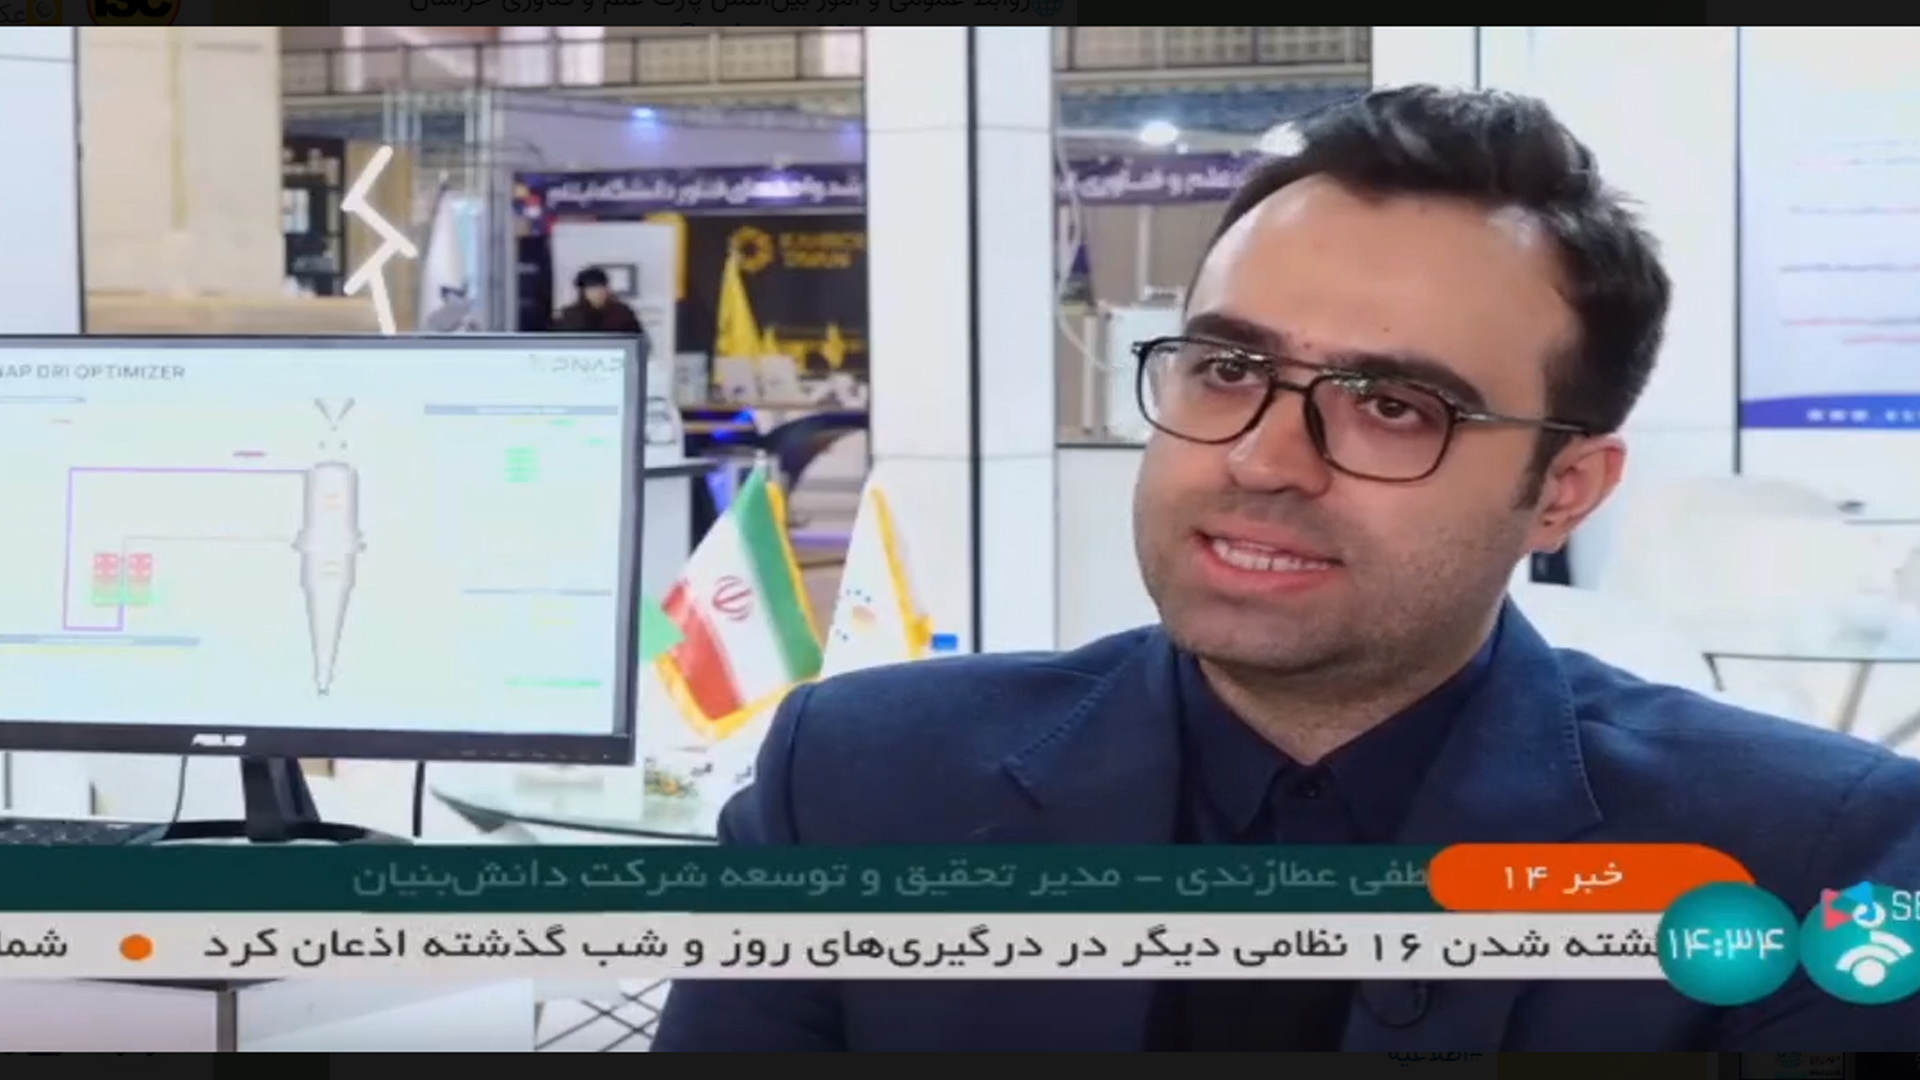 پخش گزارش حضور پارک علم و فناوری خراسان در نمایشگاه ملی هفته پژوهش تهران